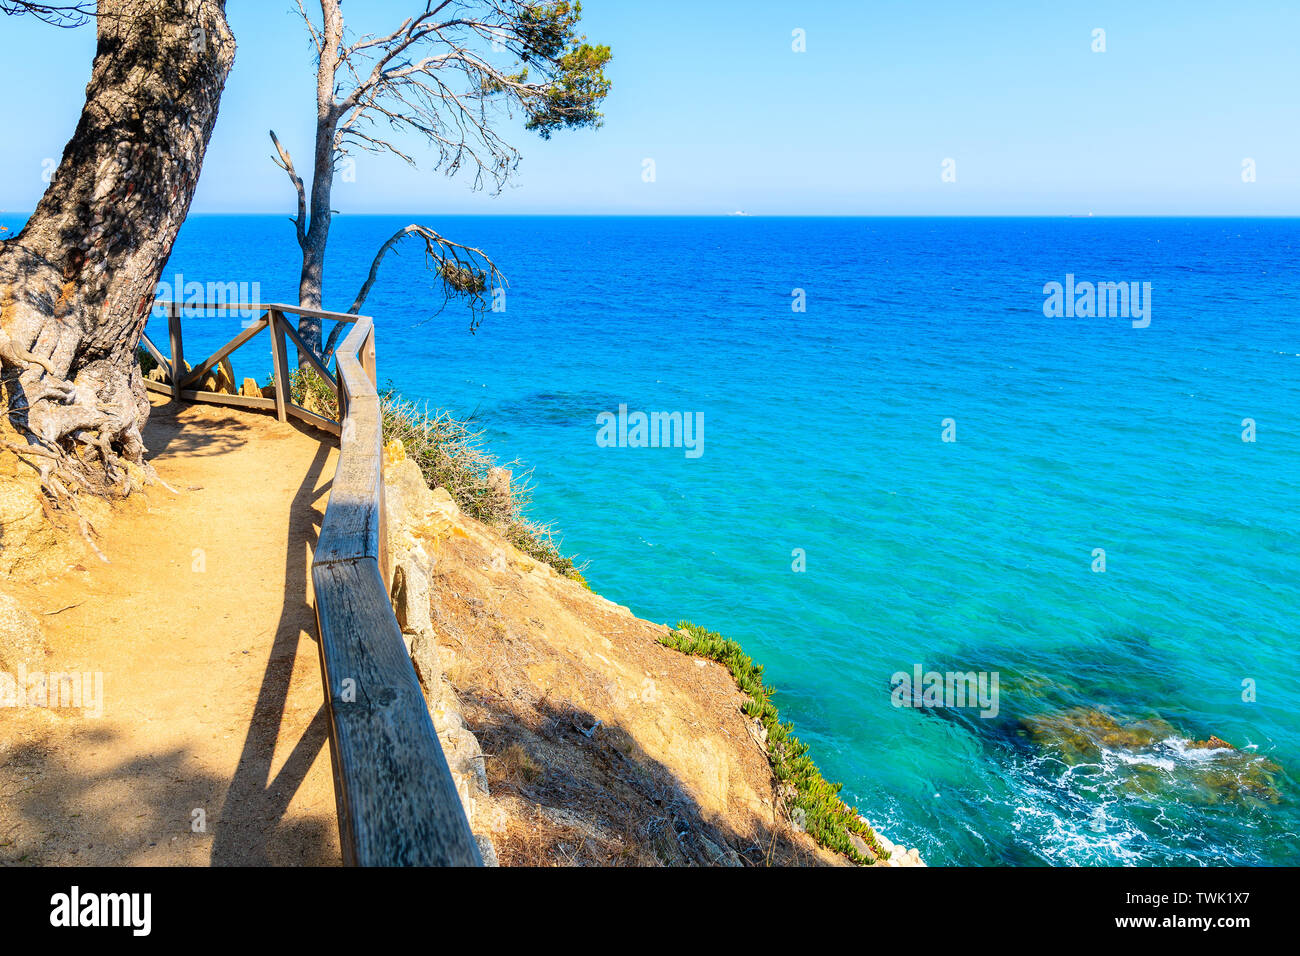 Sentier du littoral le long d'une vue magnifique sur la mer à Cap Roig, Costa Brava, Espagne Banque D'Images